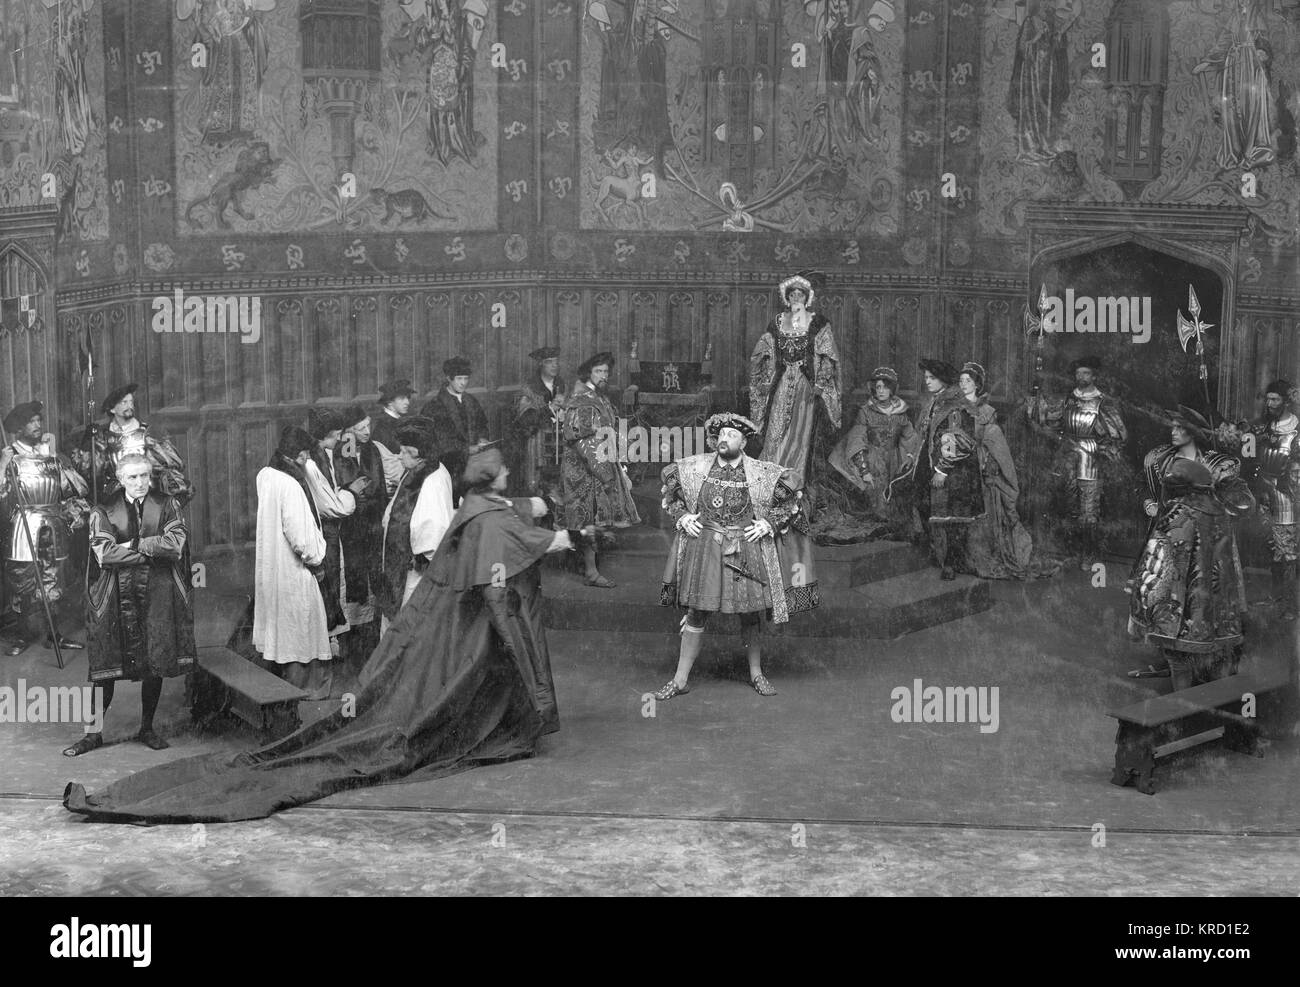 Eine Szene aus Shakespeares, Henry VIII, in einer Inszenierung von Herbert Beerbohm Tree an Seine Majestät's Theatre, London. Die Produktion eröffnet im Jahr 1910, war für die London Shakespeare Festival im Jahre 1911 wiederbelebt, und wurde im Jahr 1912 wiederholt. Baum gespielt Kardinal Wolsey. Andere Akteure waren Violet Vanbrugh (Queen Katherine), Arthur Bourchier (König Heinrich) und Laura Cowie (Anne Bullen). Diese Szene zeigt eine Konfrontation zwischen Henry und Wolsey, während die Mitglieder des Hofes auf, besorgt. (3 von 6) Datum: ca. 1910-1912 Stockfoto